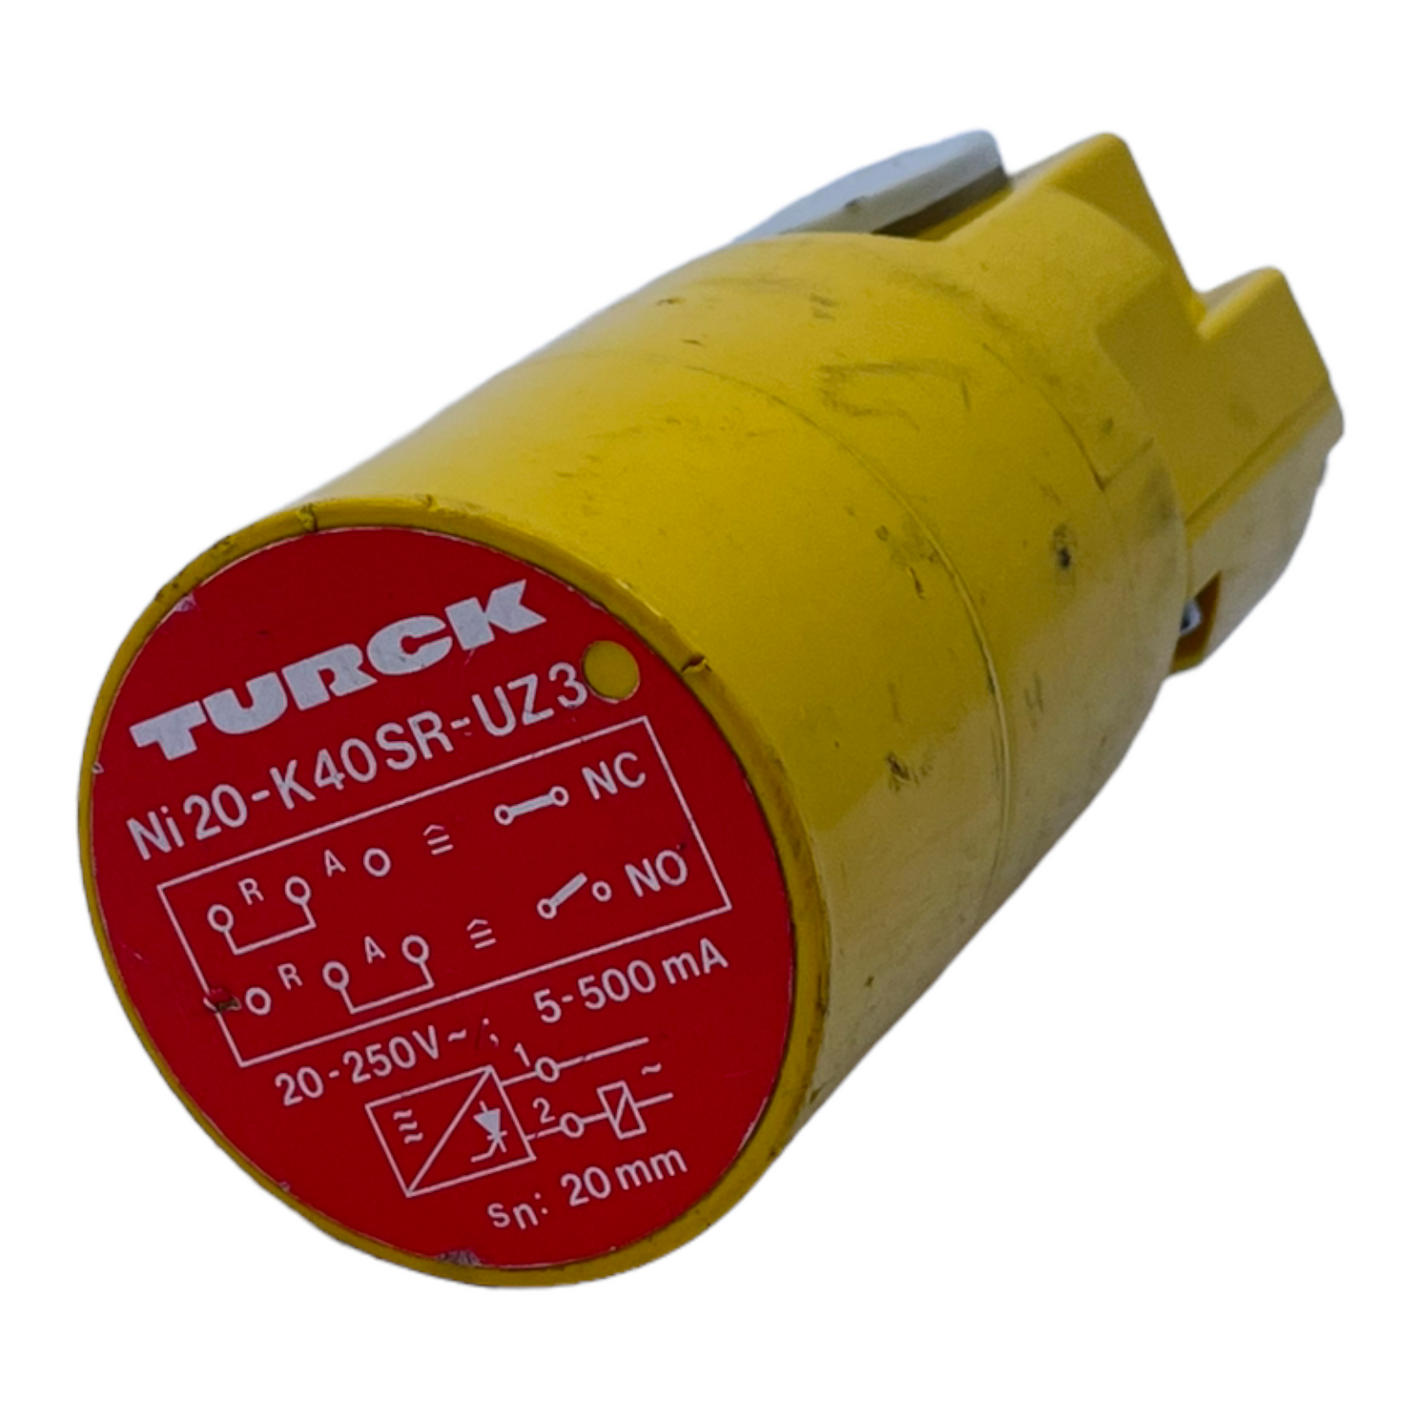 Turck Ni20-K40SR-UZ3 Induktiver Sensor für industriellen Einsatz 20-250V